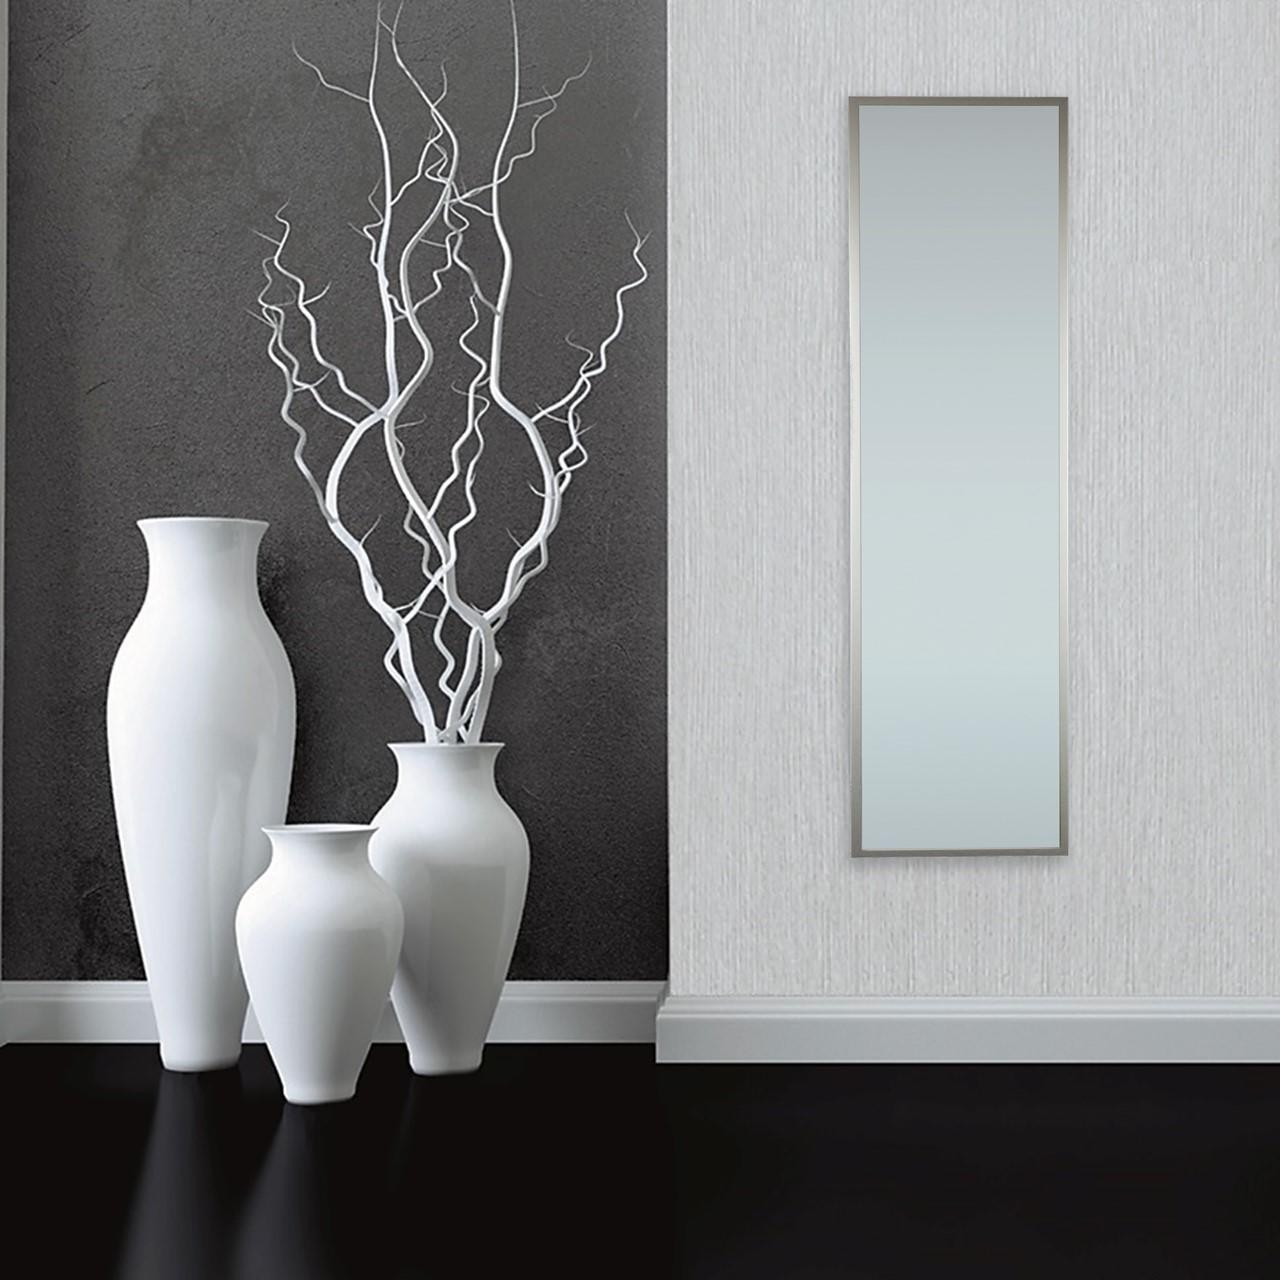 Seaboard End Saga Specchio da parete rettangolare Milo argento 30x120 cm INSPIRE | Leroy  Merlin